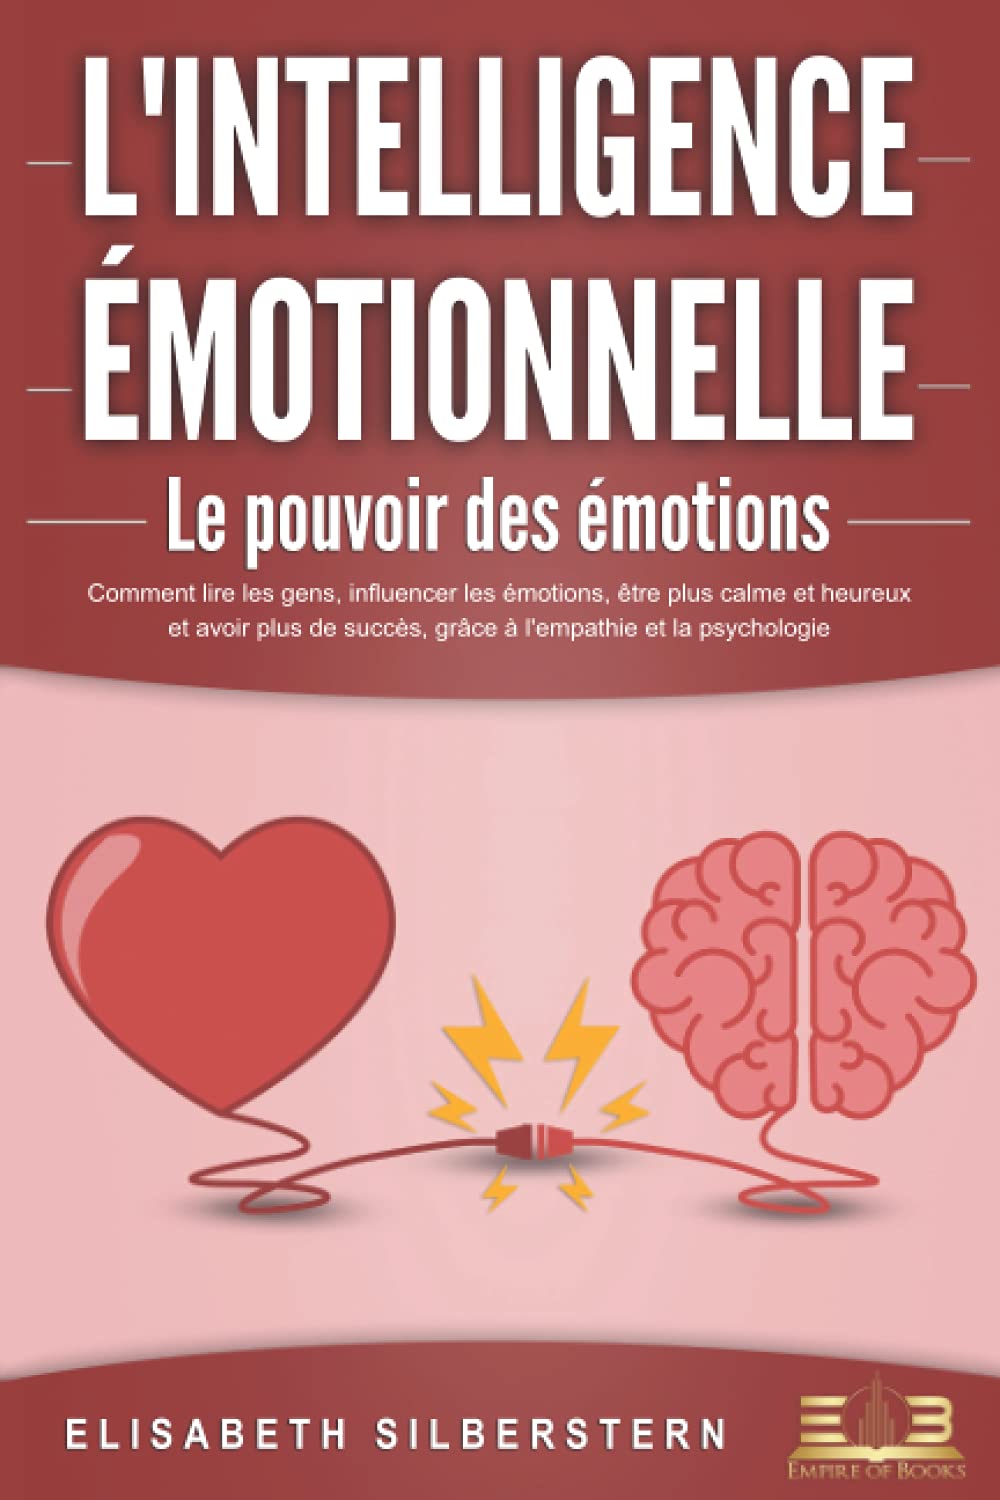 L'INTELLIGENCE ÉMOTIONNELLE - Le pouvoir des émotions: Comment lire les gens, influencer les émotions, être plus calme et heureux et avoir plus de succès, grâce à l'empathie et la psychologie